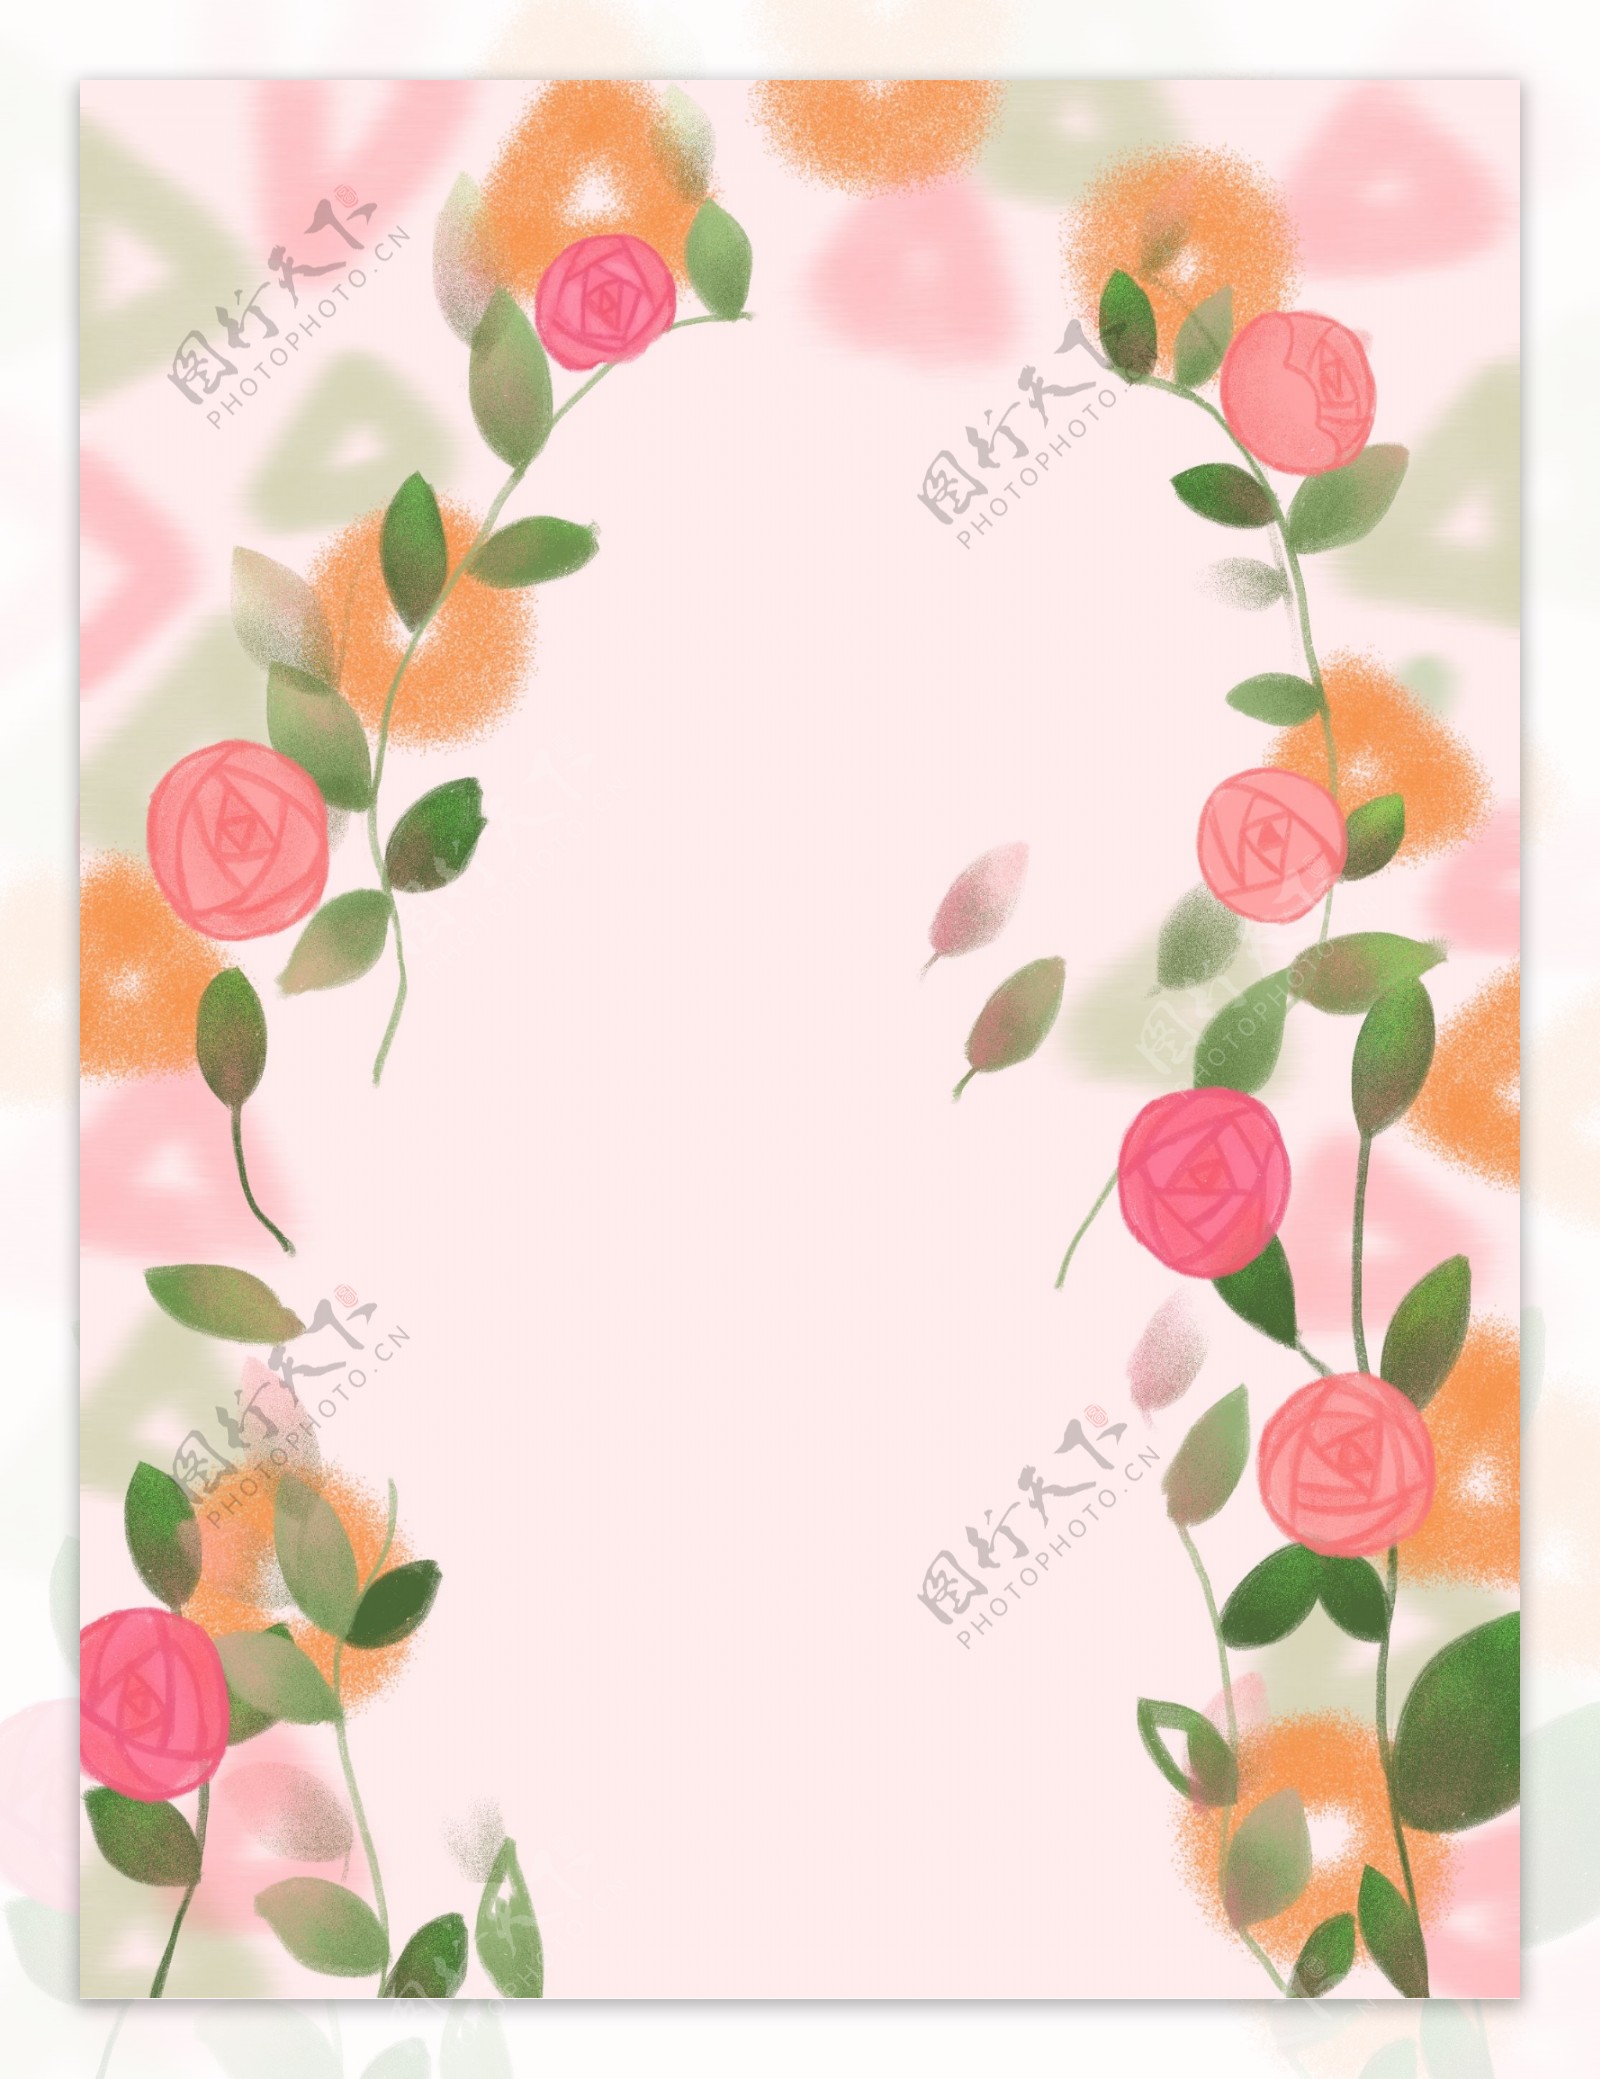 彩绘玫瑰花背景设计